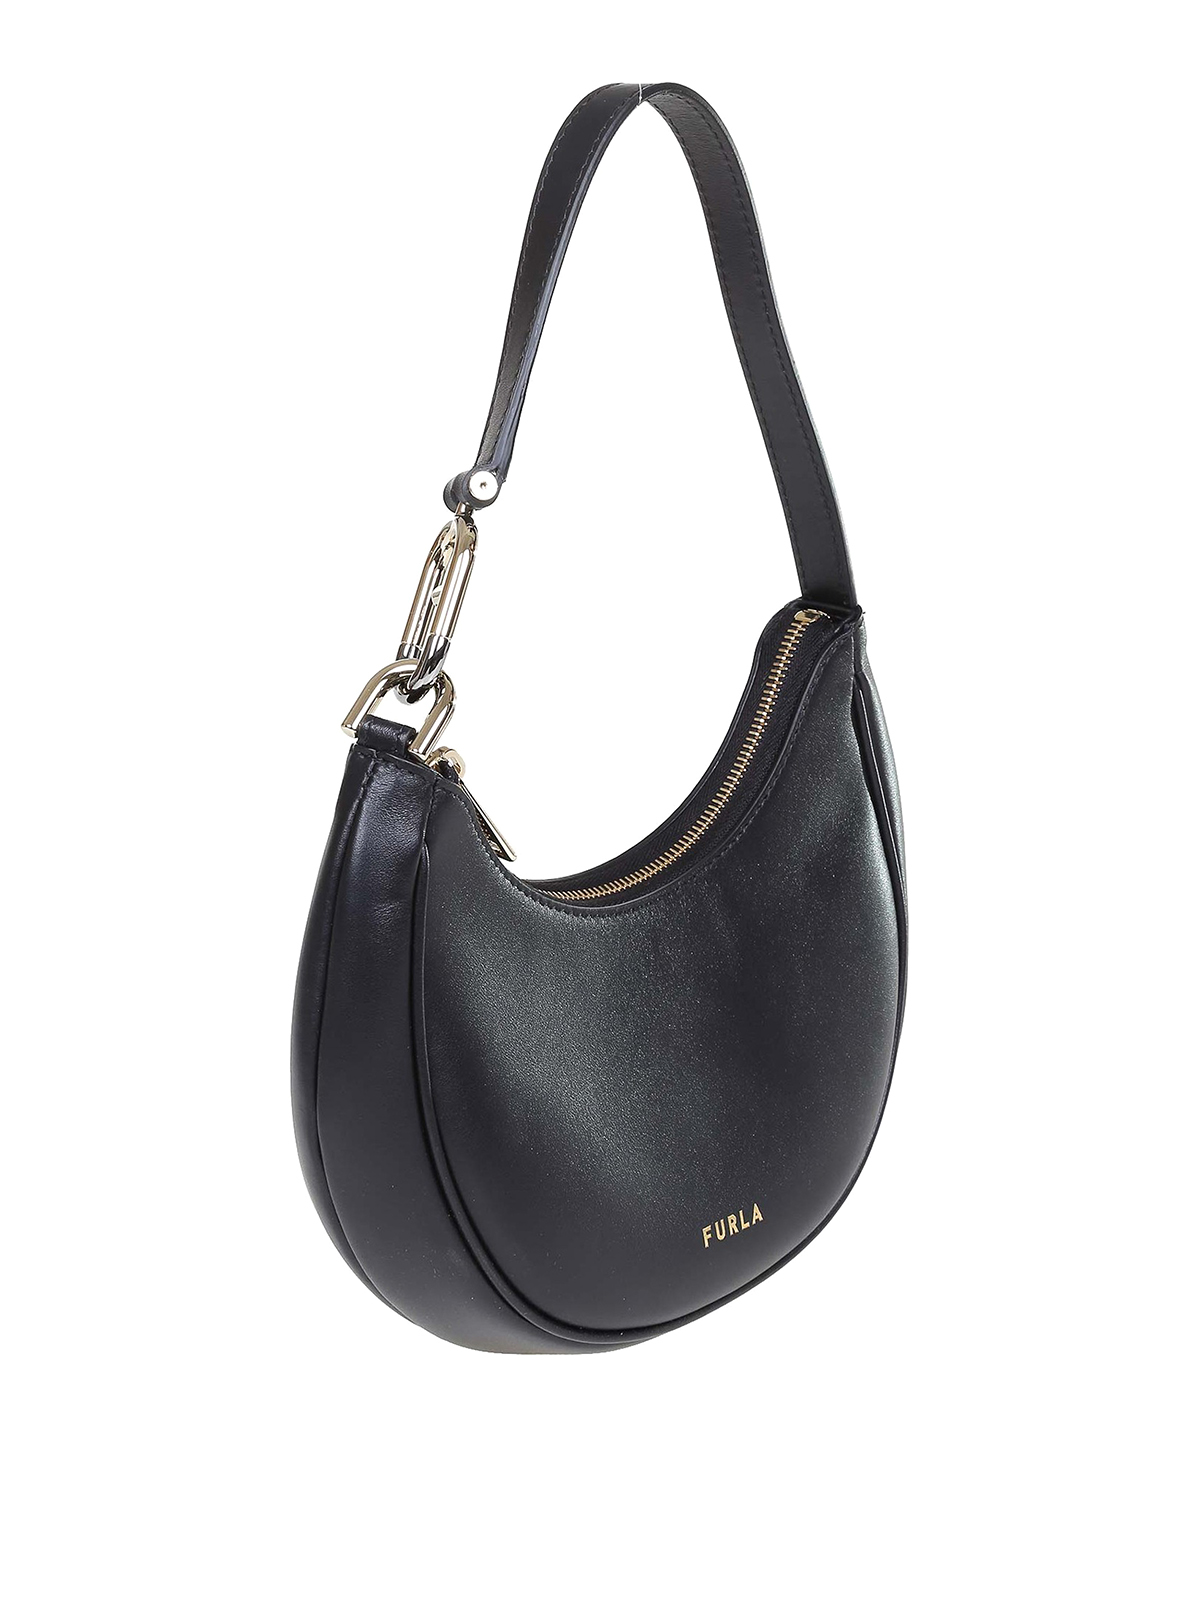 Shoulder bags Furla - Primavera s shoulder bag in black leather